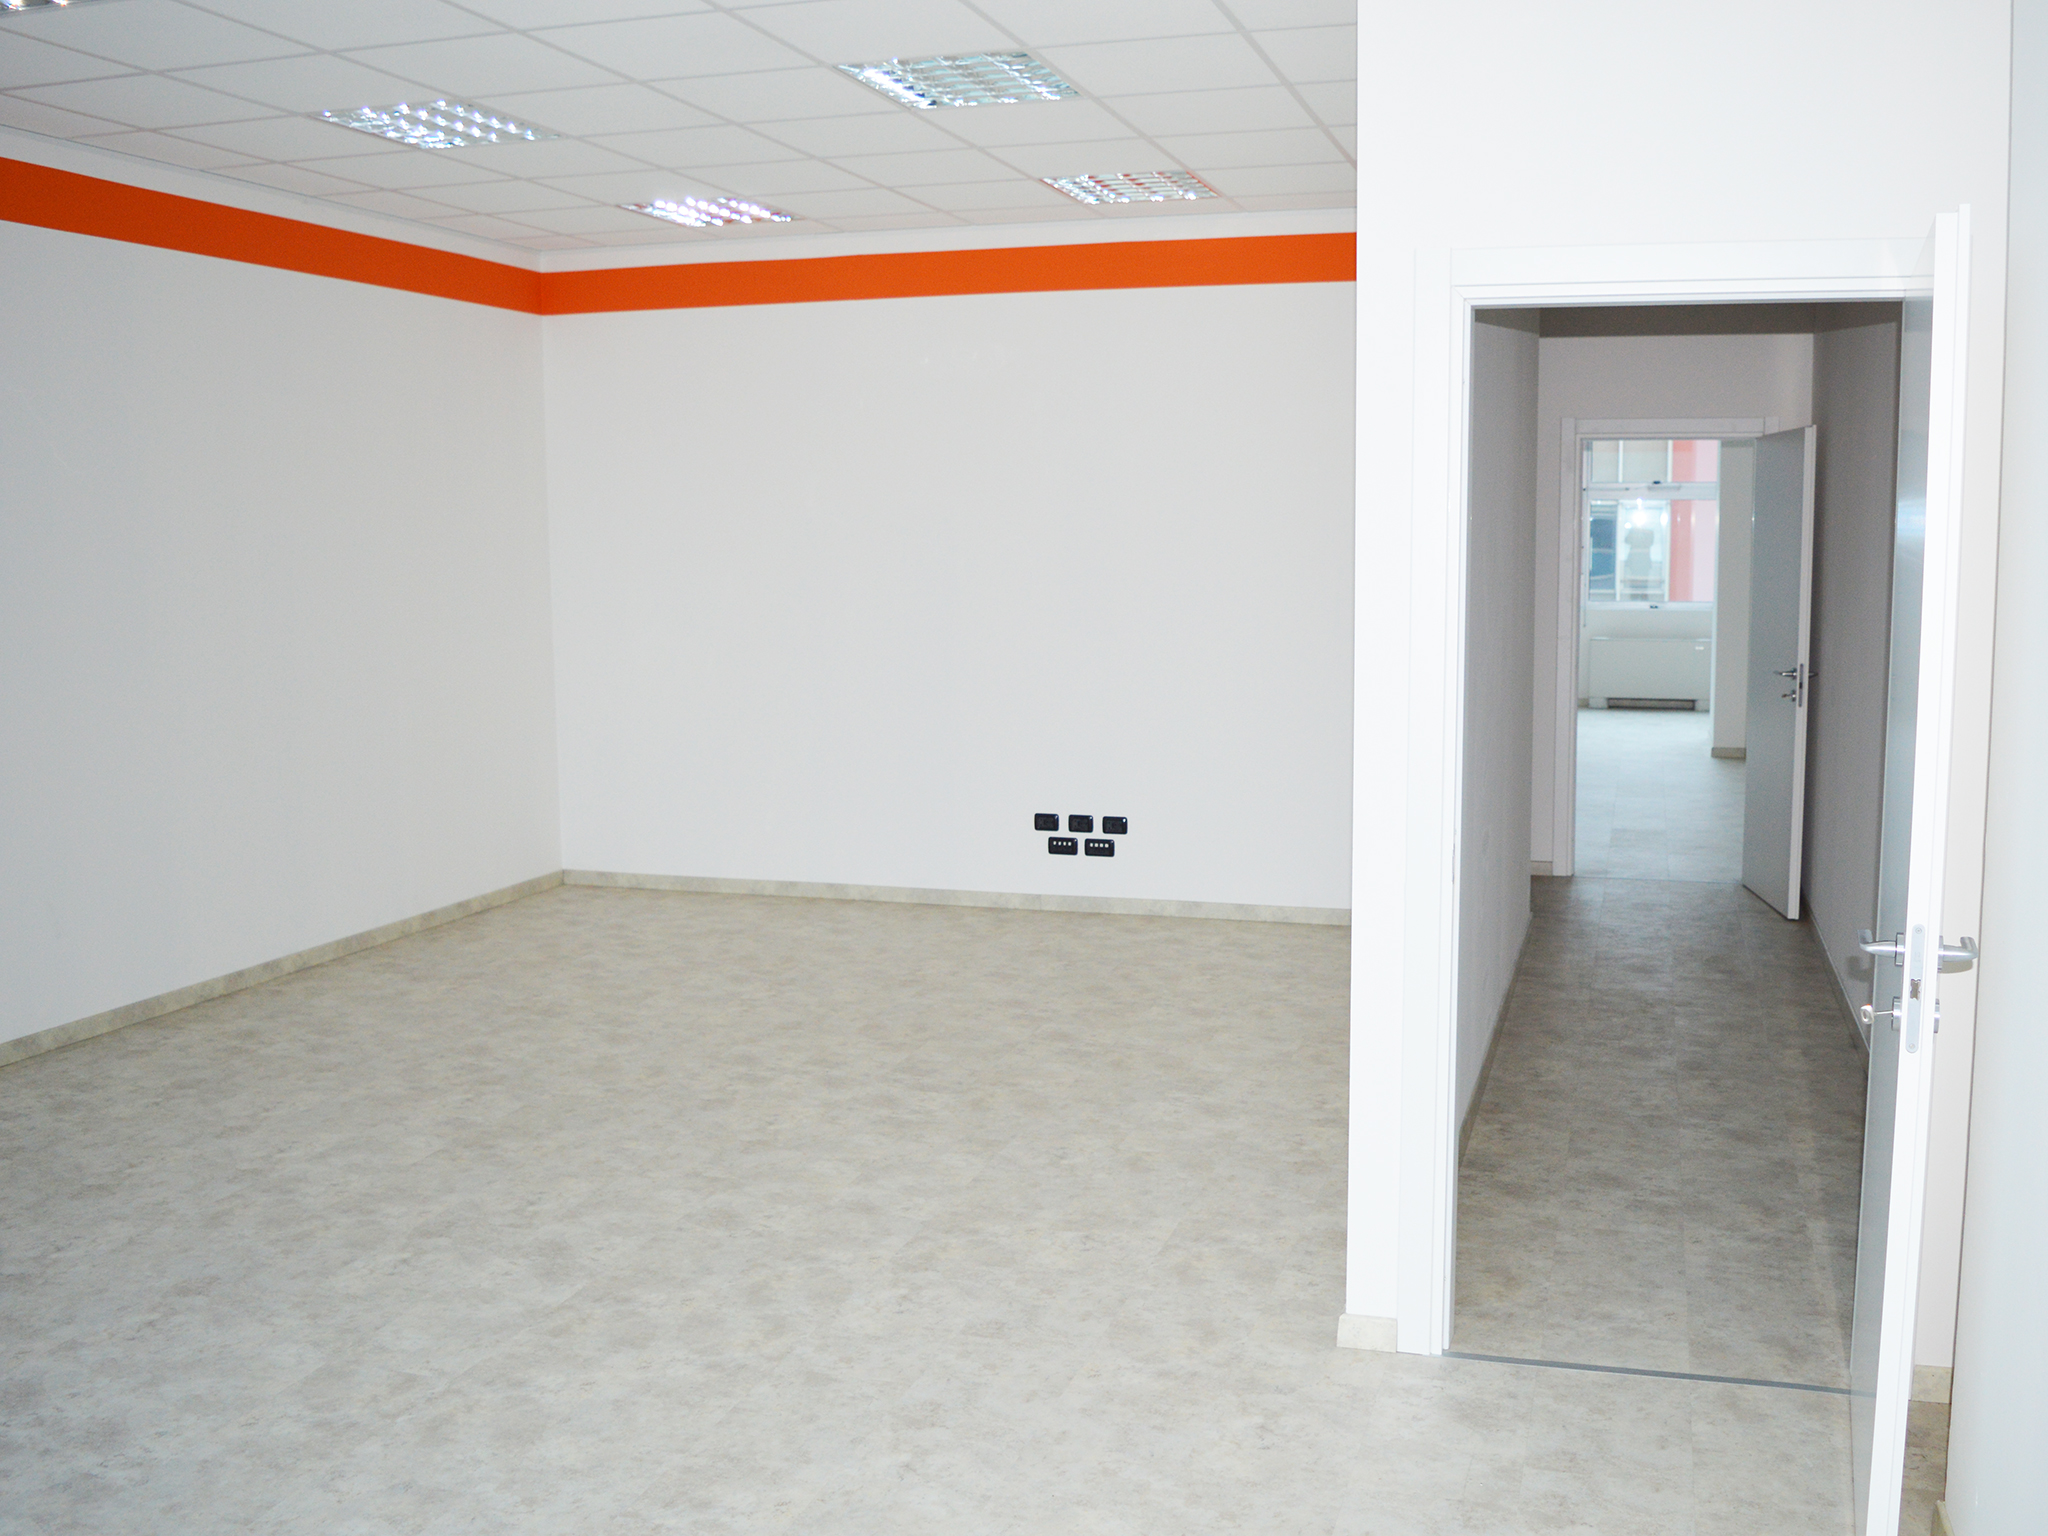 Office to rent in Milan 750 m² (8073 ft²) third floor